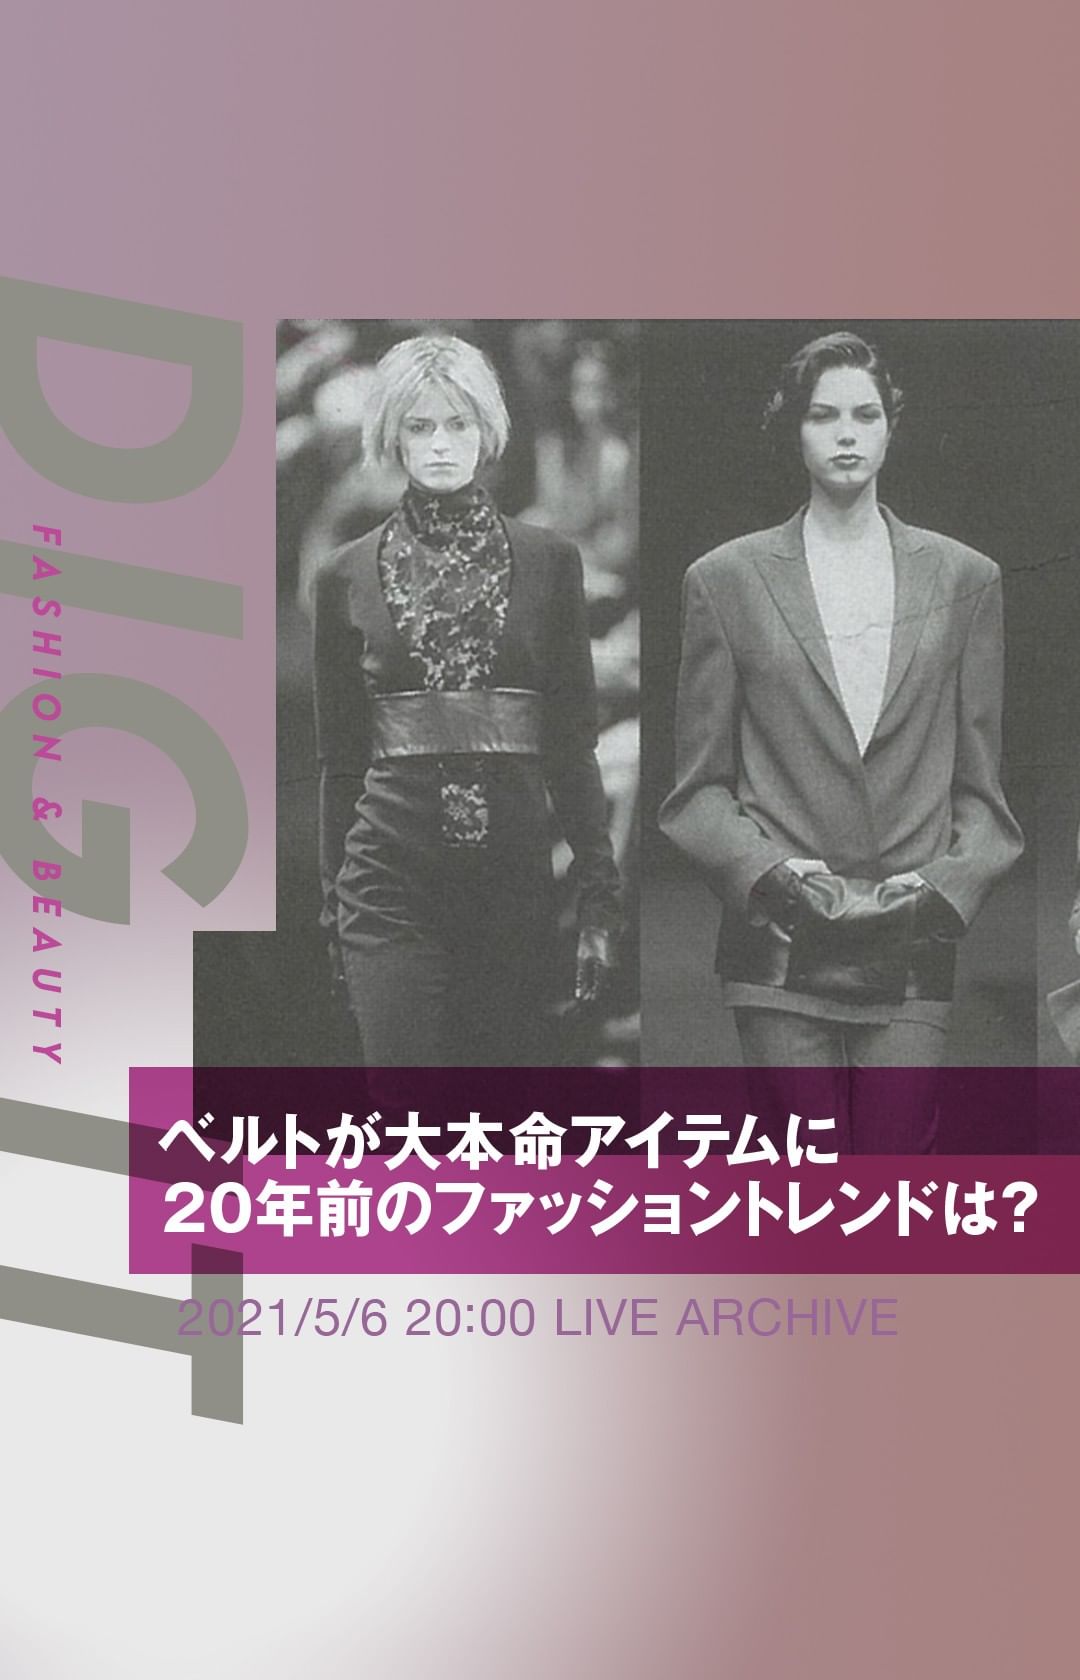 今回の Dig It は 1979年から発行を続けるファッション業界紙 Wwdjapan の年前の紙面を振り返ります 川久保玲 コム デ ギャルソン Magmoe